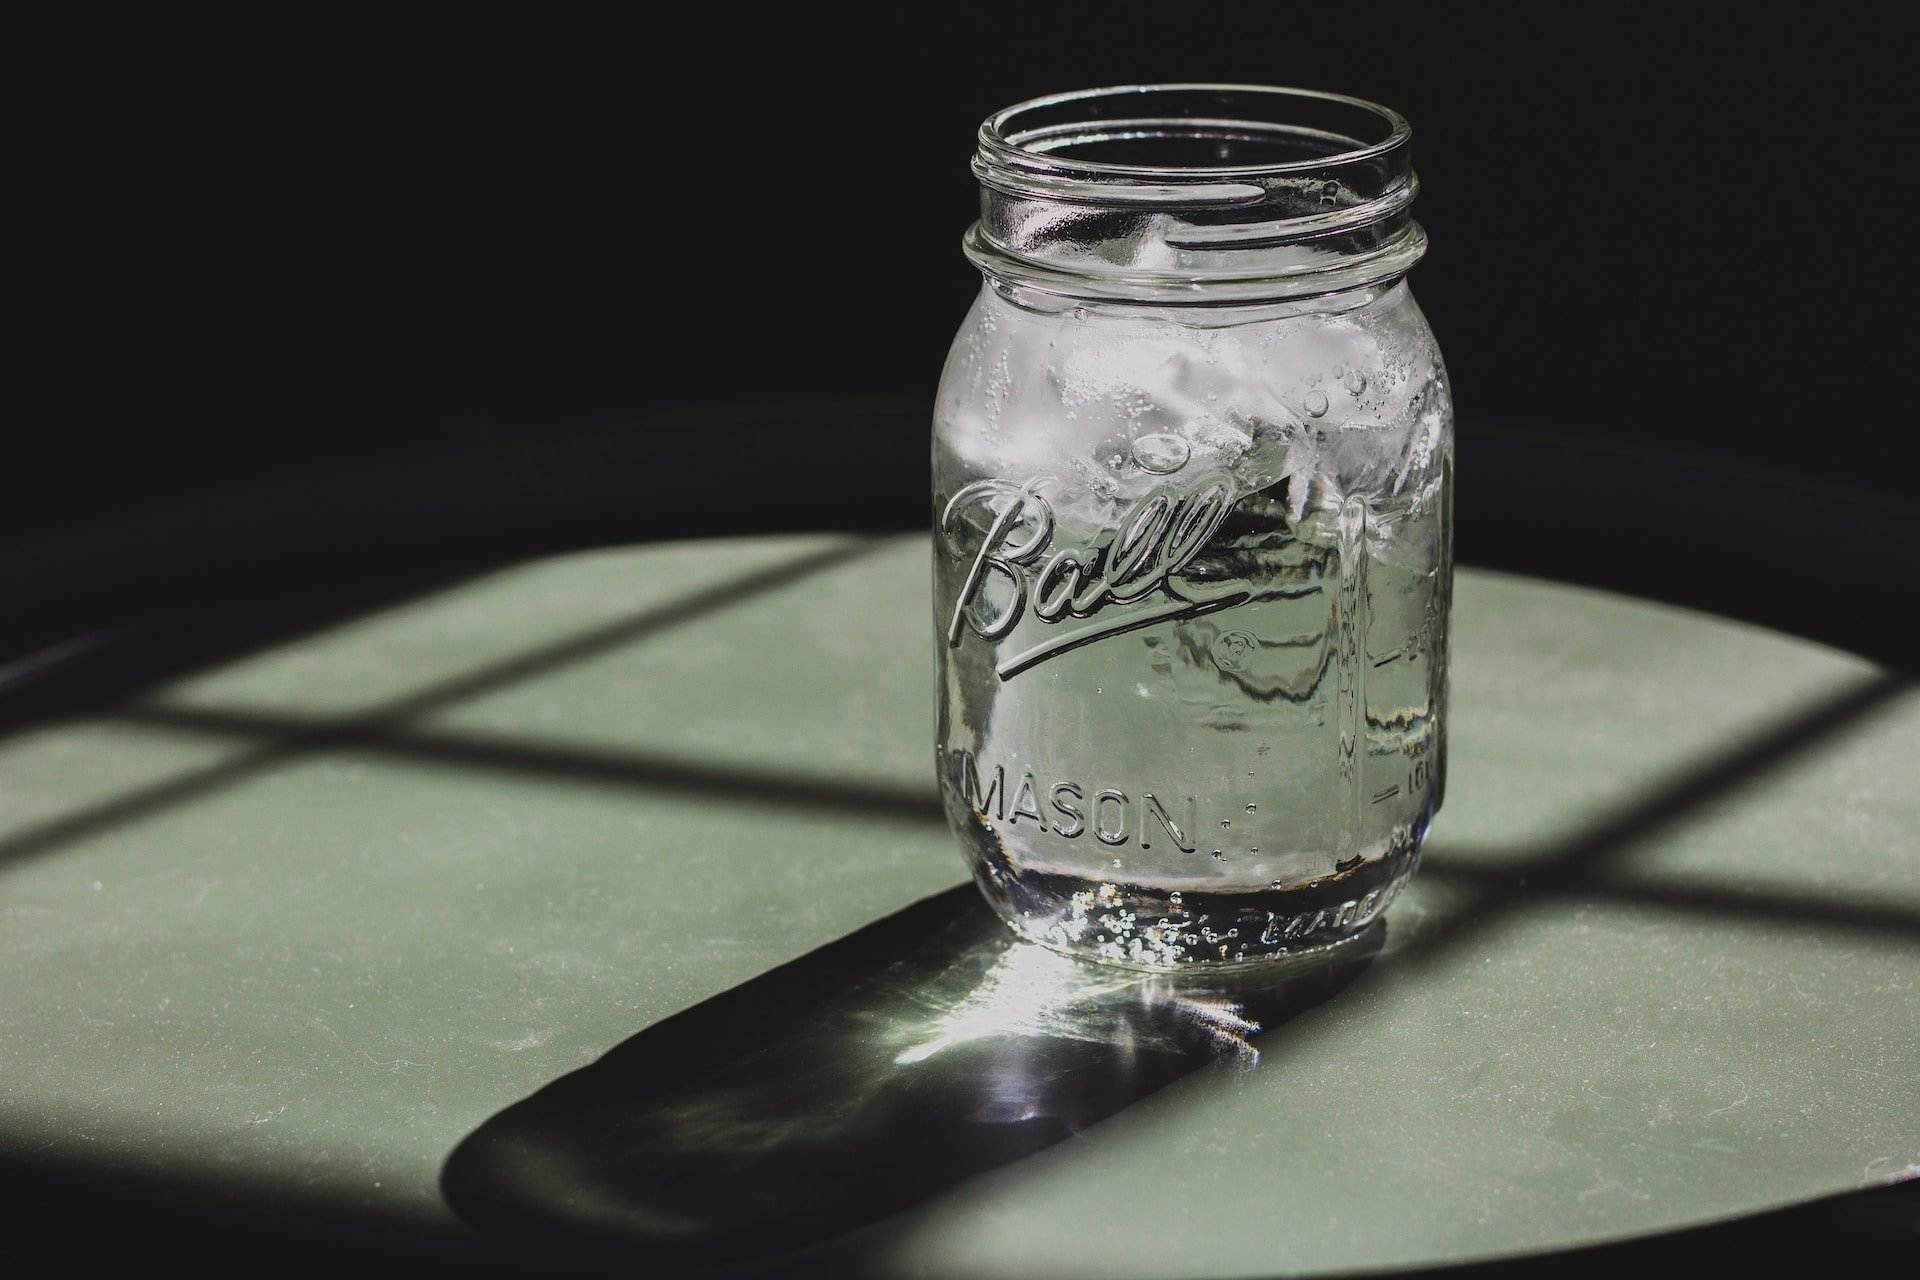 És recomanable beure aigua freda a les nits? La resposta dels experts